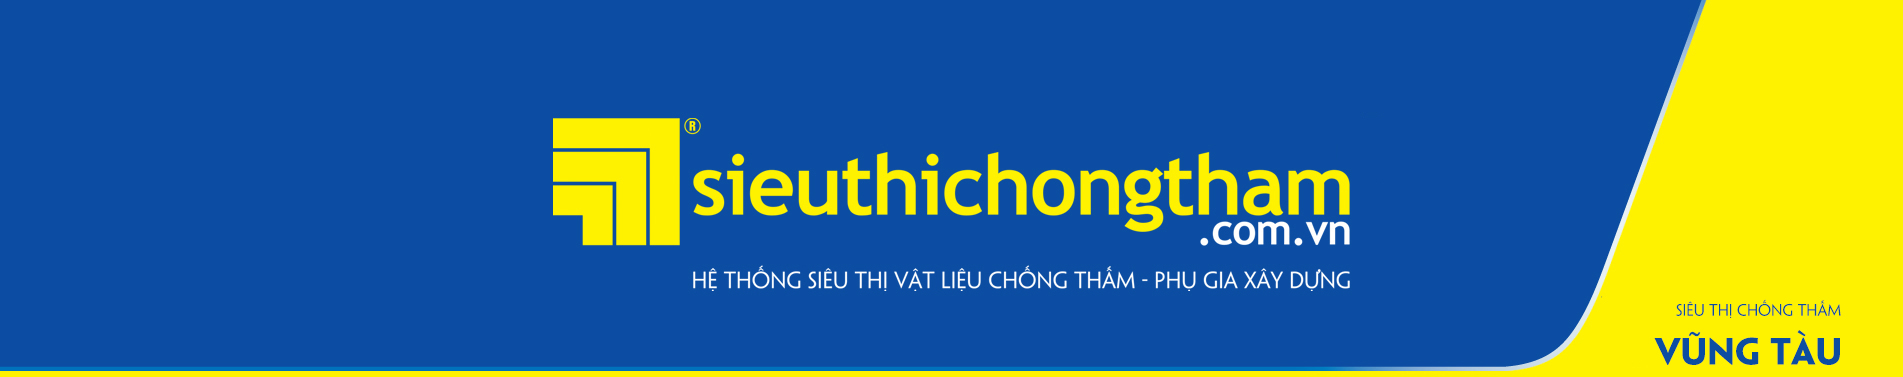 Sieu Thi Chong Tham Vung Tau